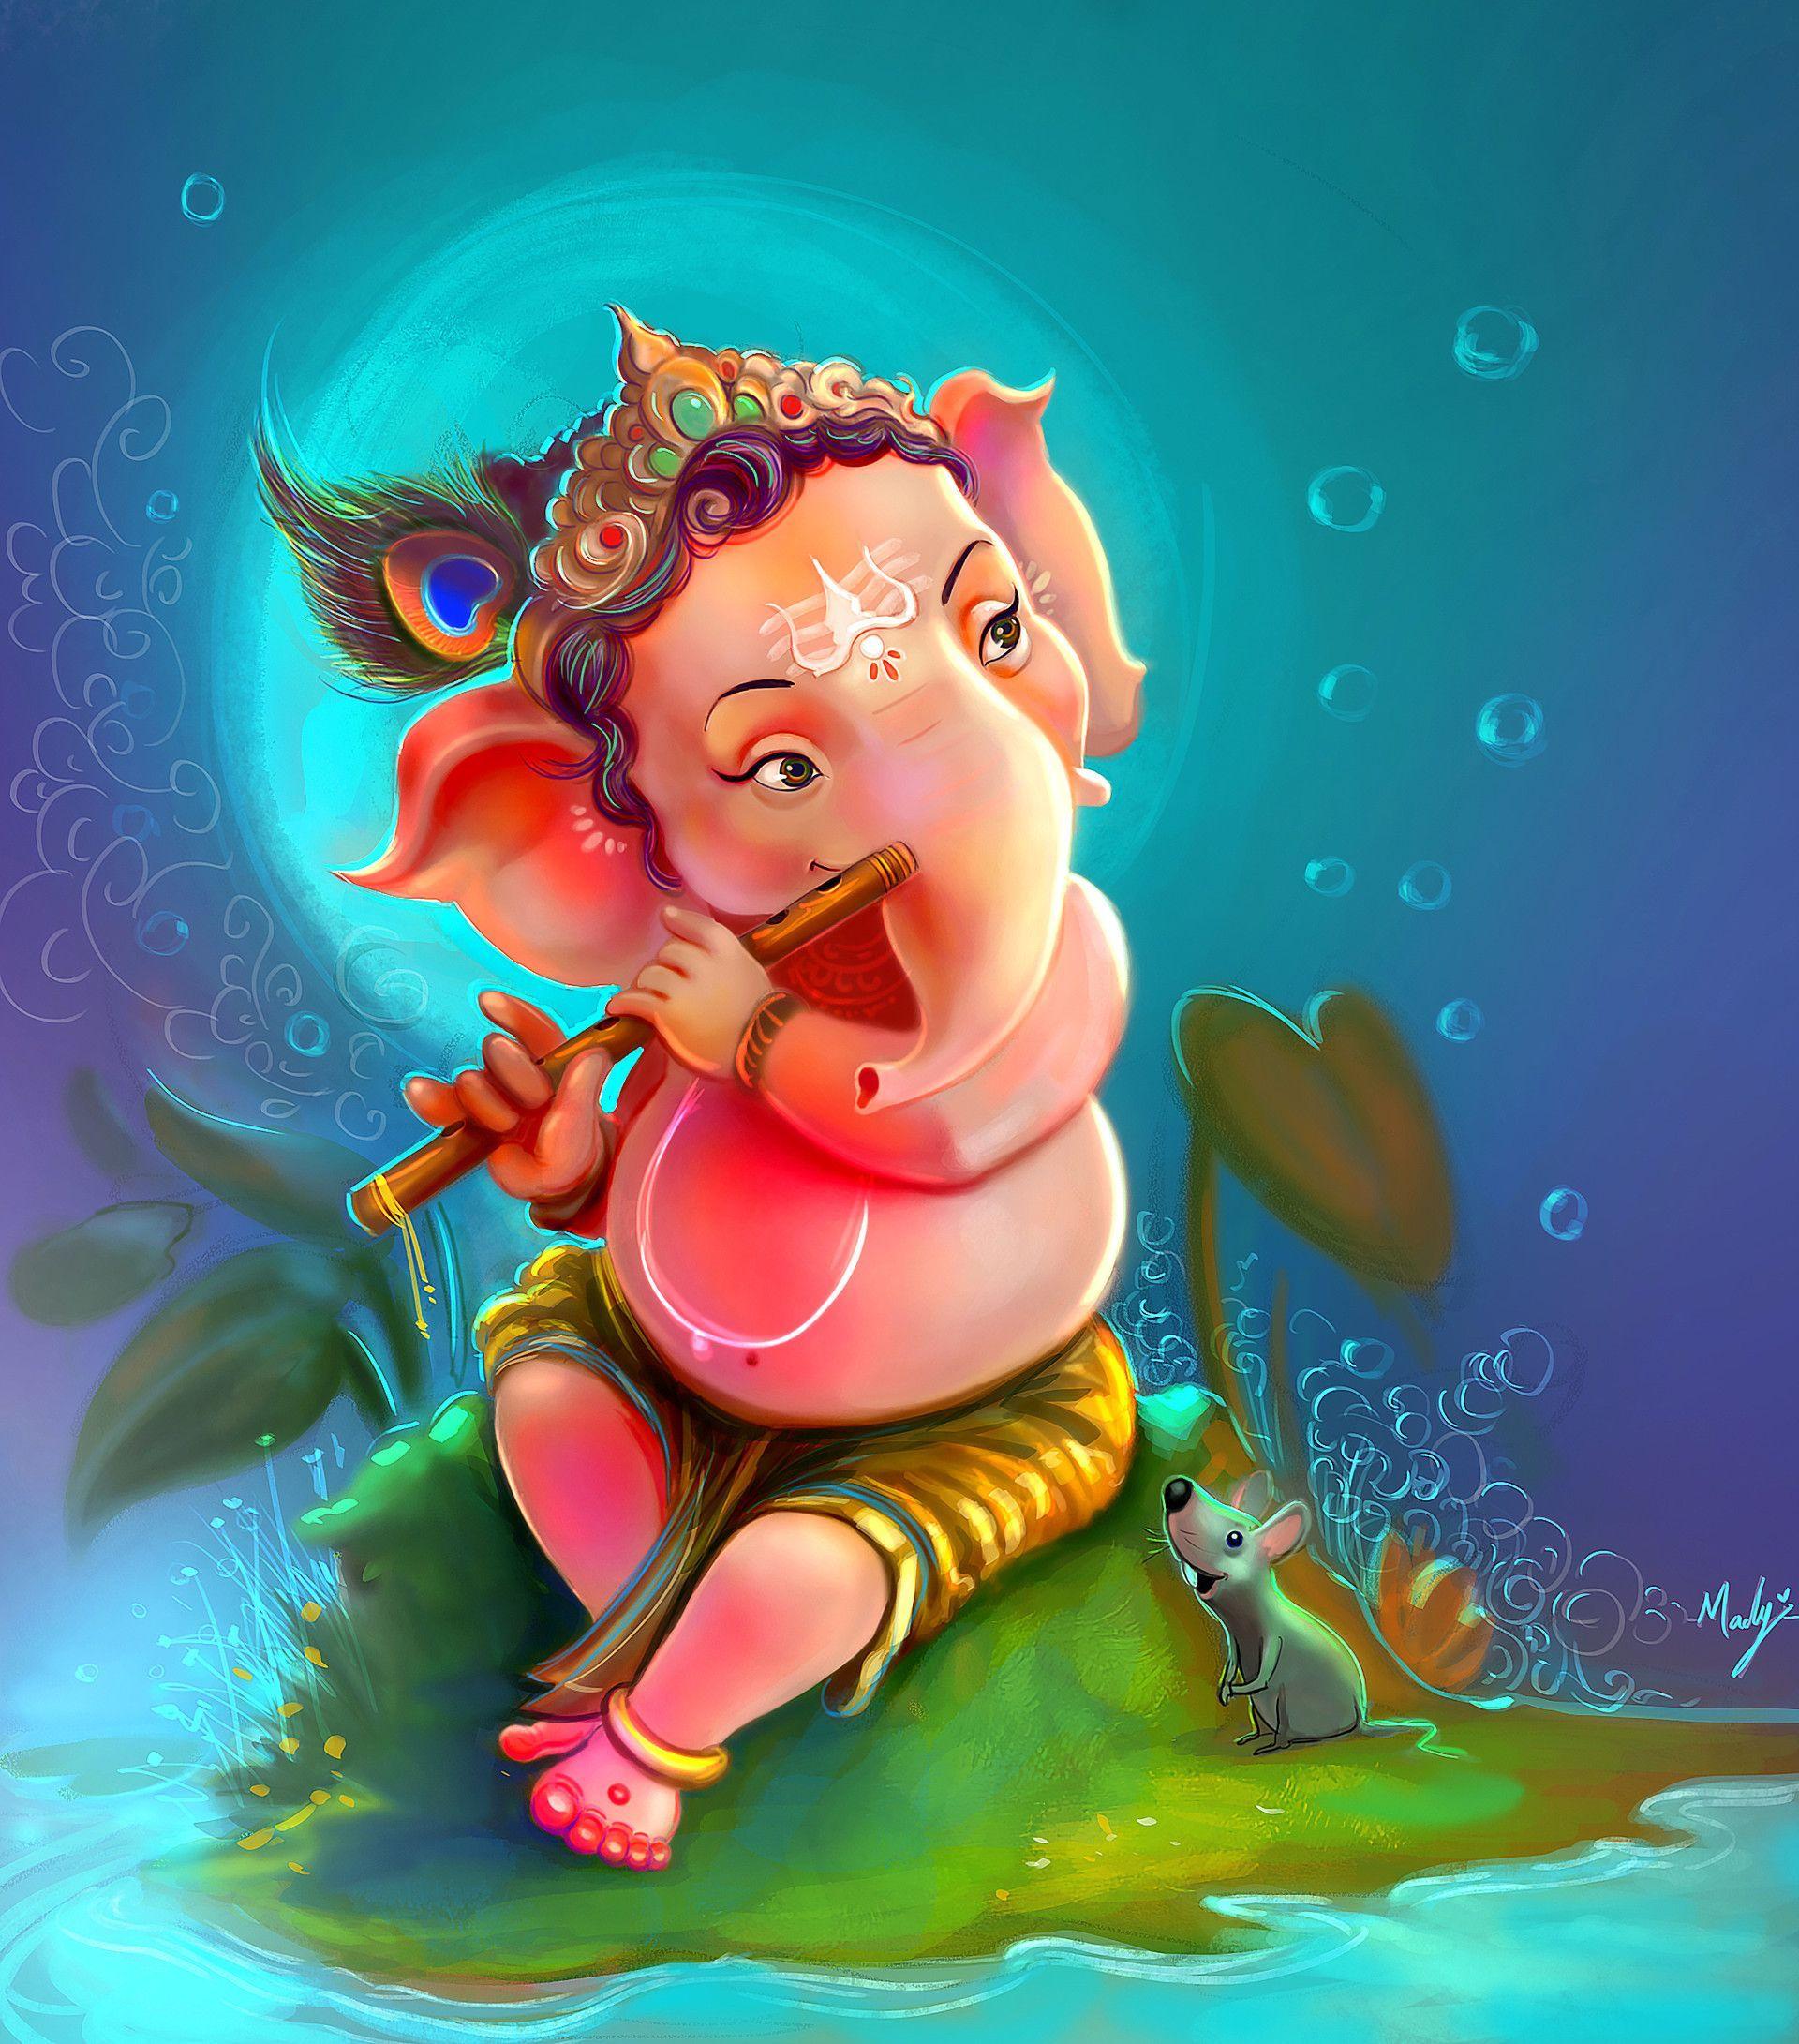 1920x2181 ArtStation - Chúa Ganesha và ganesh chaturthi vui vẻ., Madhaw Bauri.  Hình ảnh ganesh chaturthi, Happy ganesh chaturthi, Hình ảnh ganesh chaturthi hạnh phúc